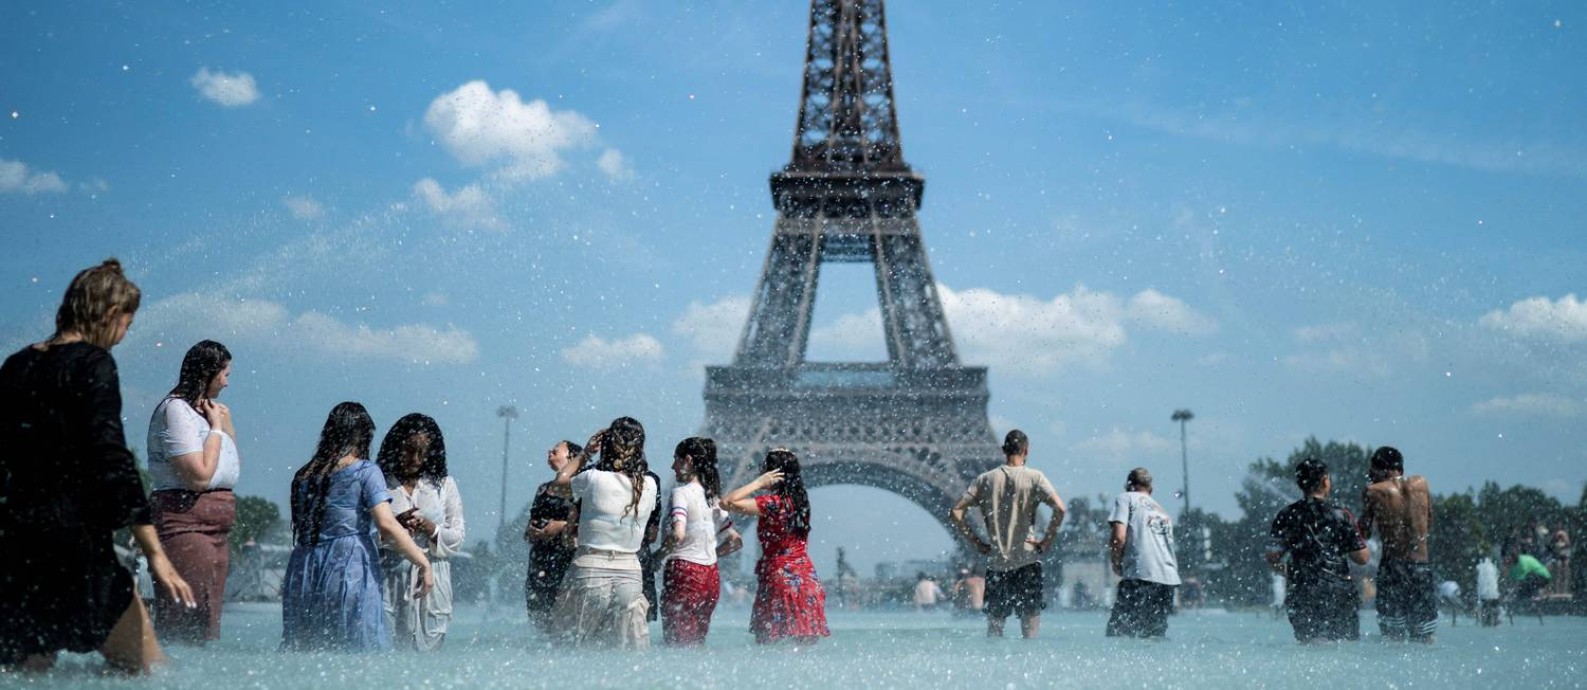 Pessoas se resfrescam na fonte da esplanada do Trocadero, em Paris. Foto: KENZO TRIBOUILLARD / AFP